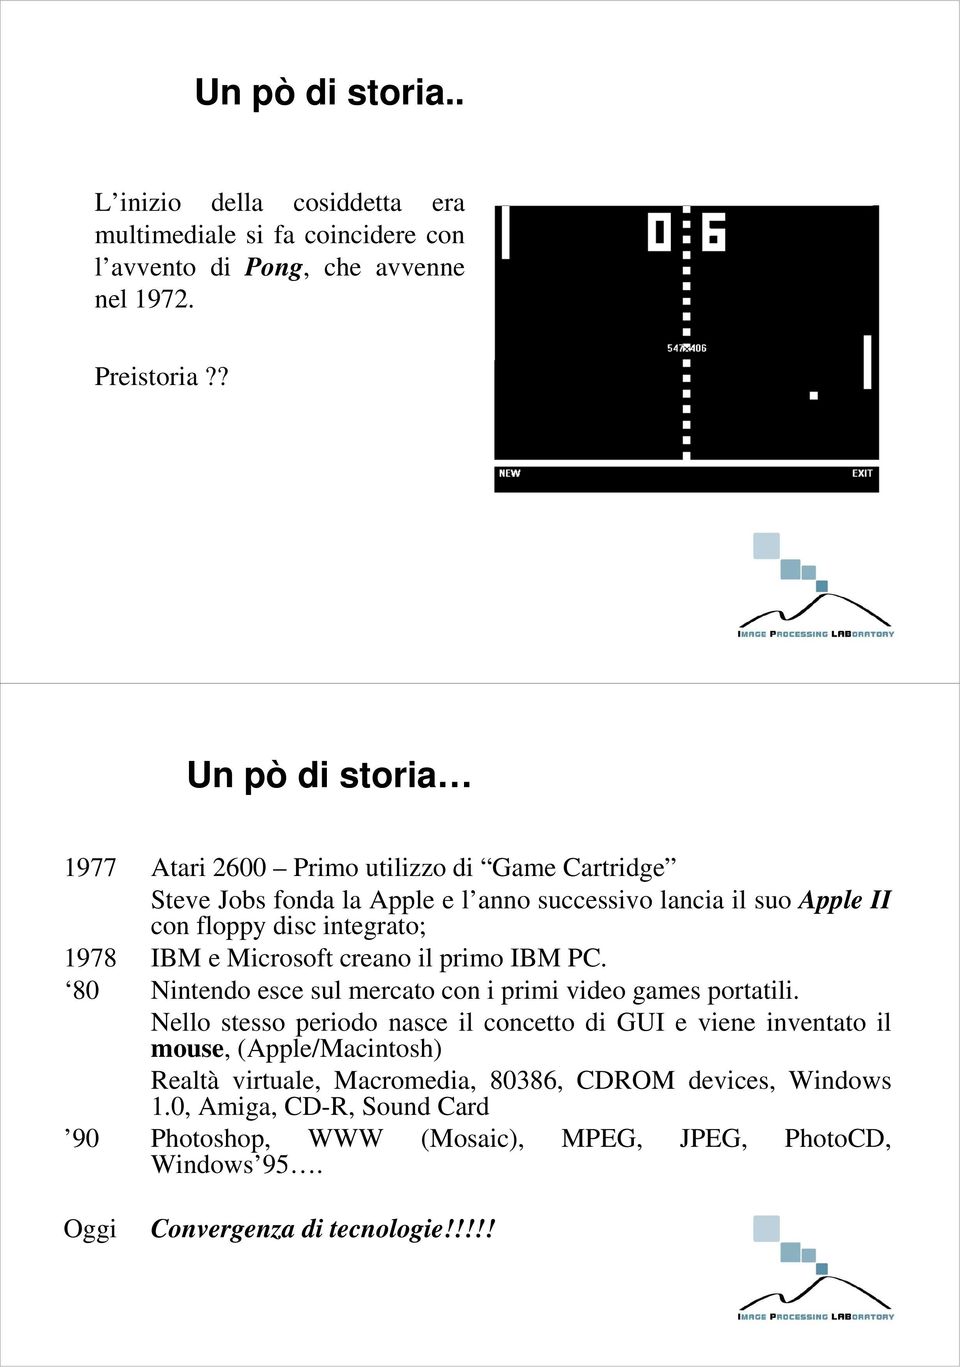 IBM e Microsoft creano il primo IBM PC. 80 Nintendo esce sul mercato con i primi video games portatili.